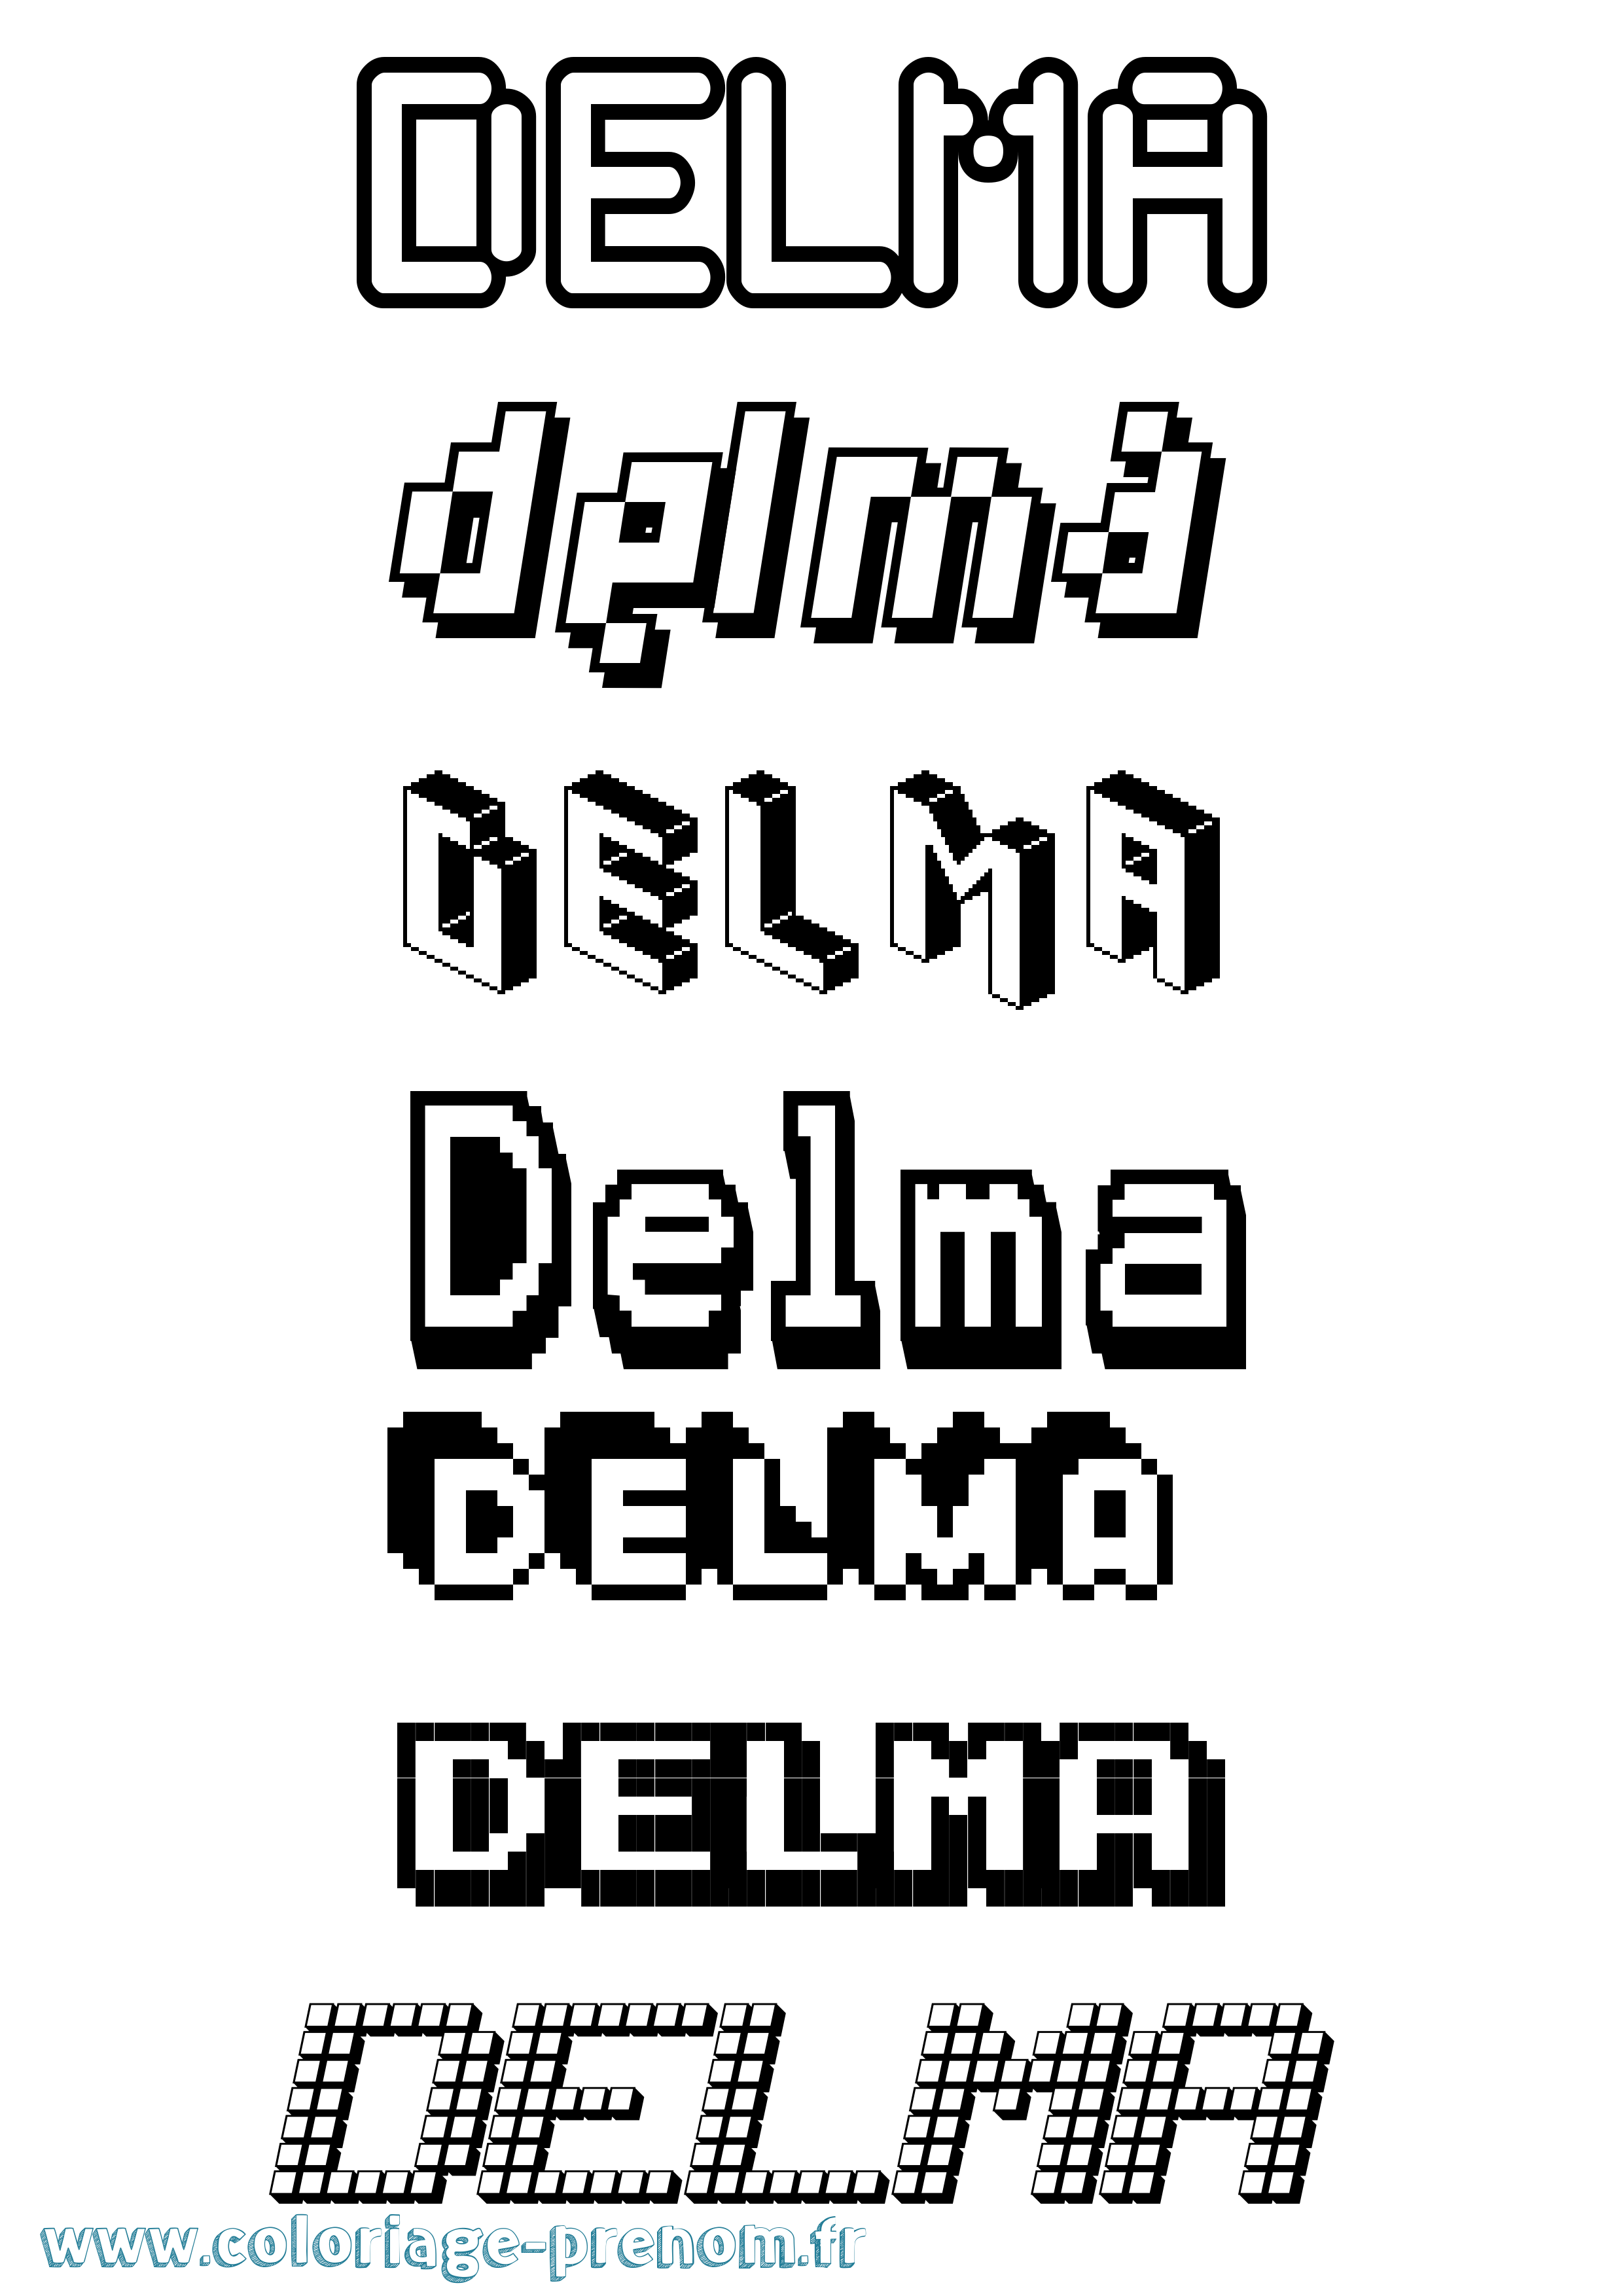 Coloriage prénom Delma Pixel